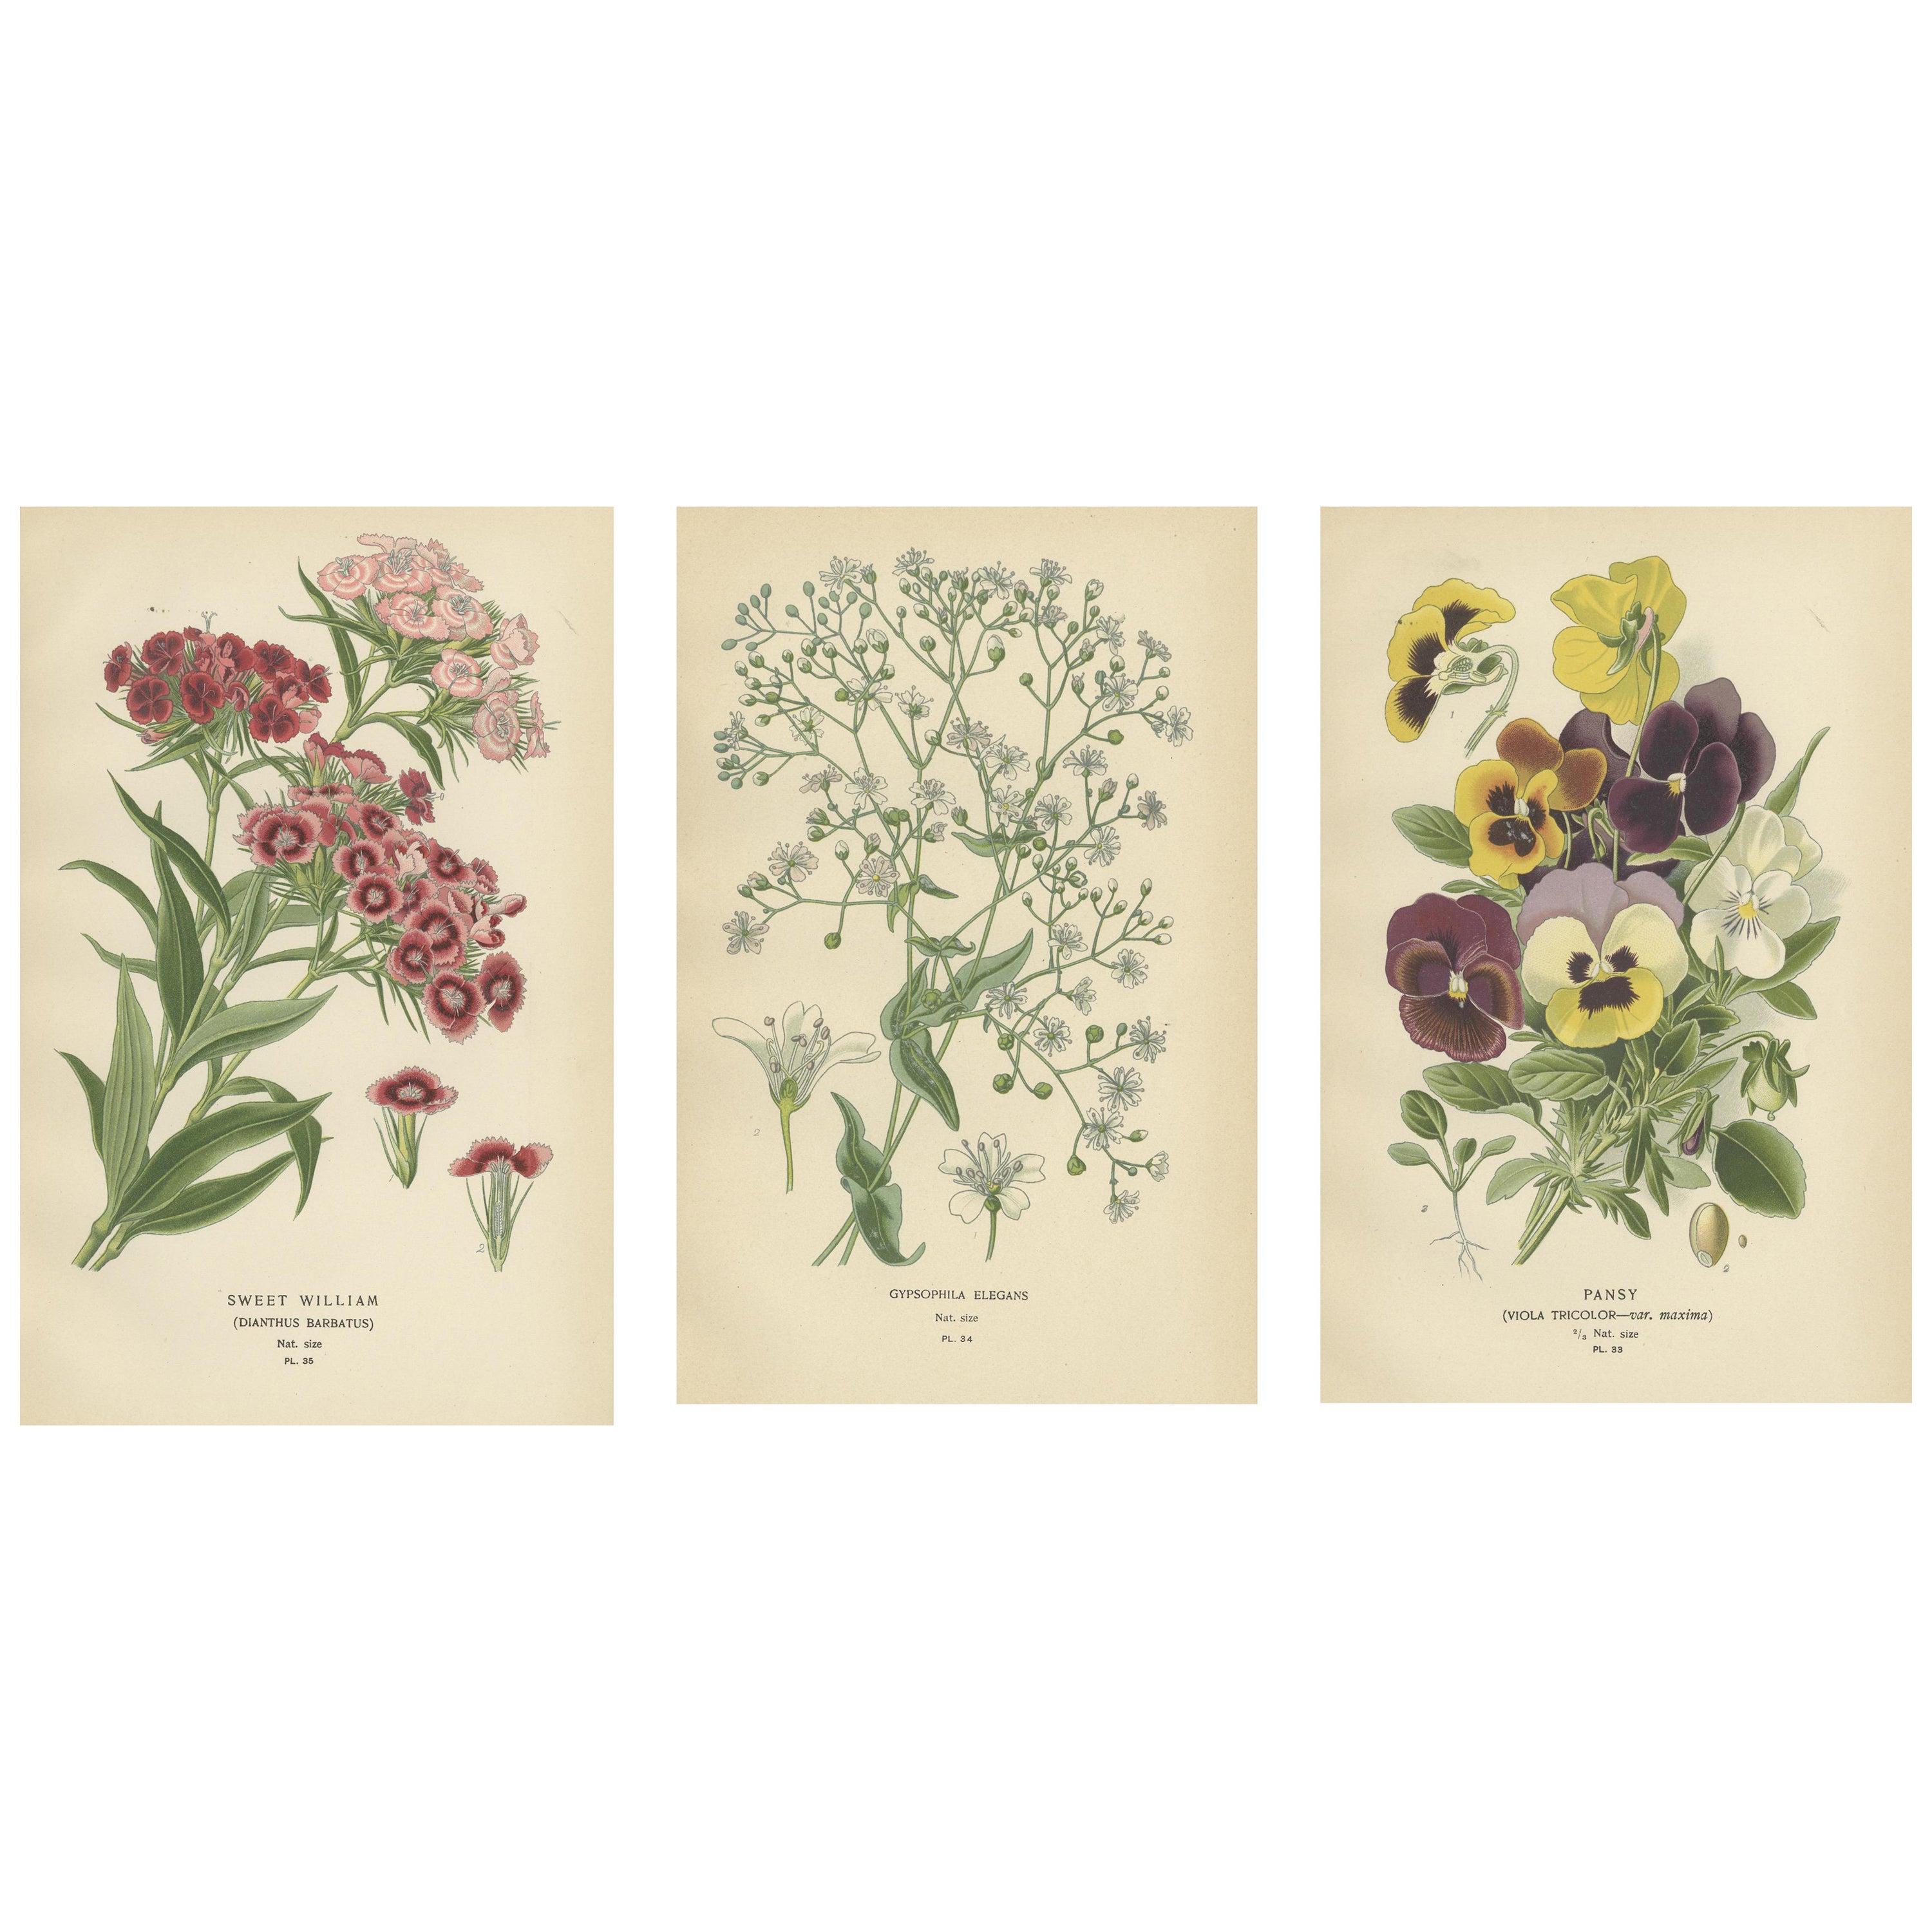 Viktorianische Vivids: Eine geblümte Kollektion aus Edward Steps Meisterwerken, 1896 